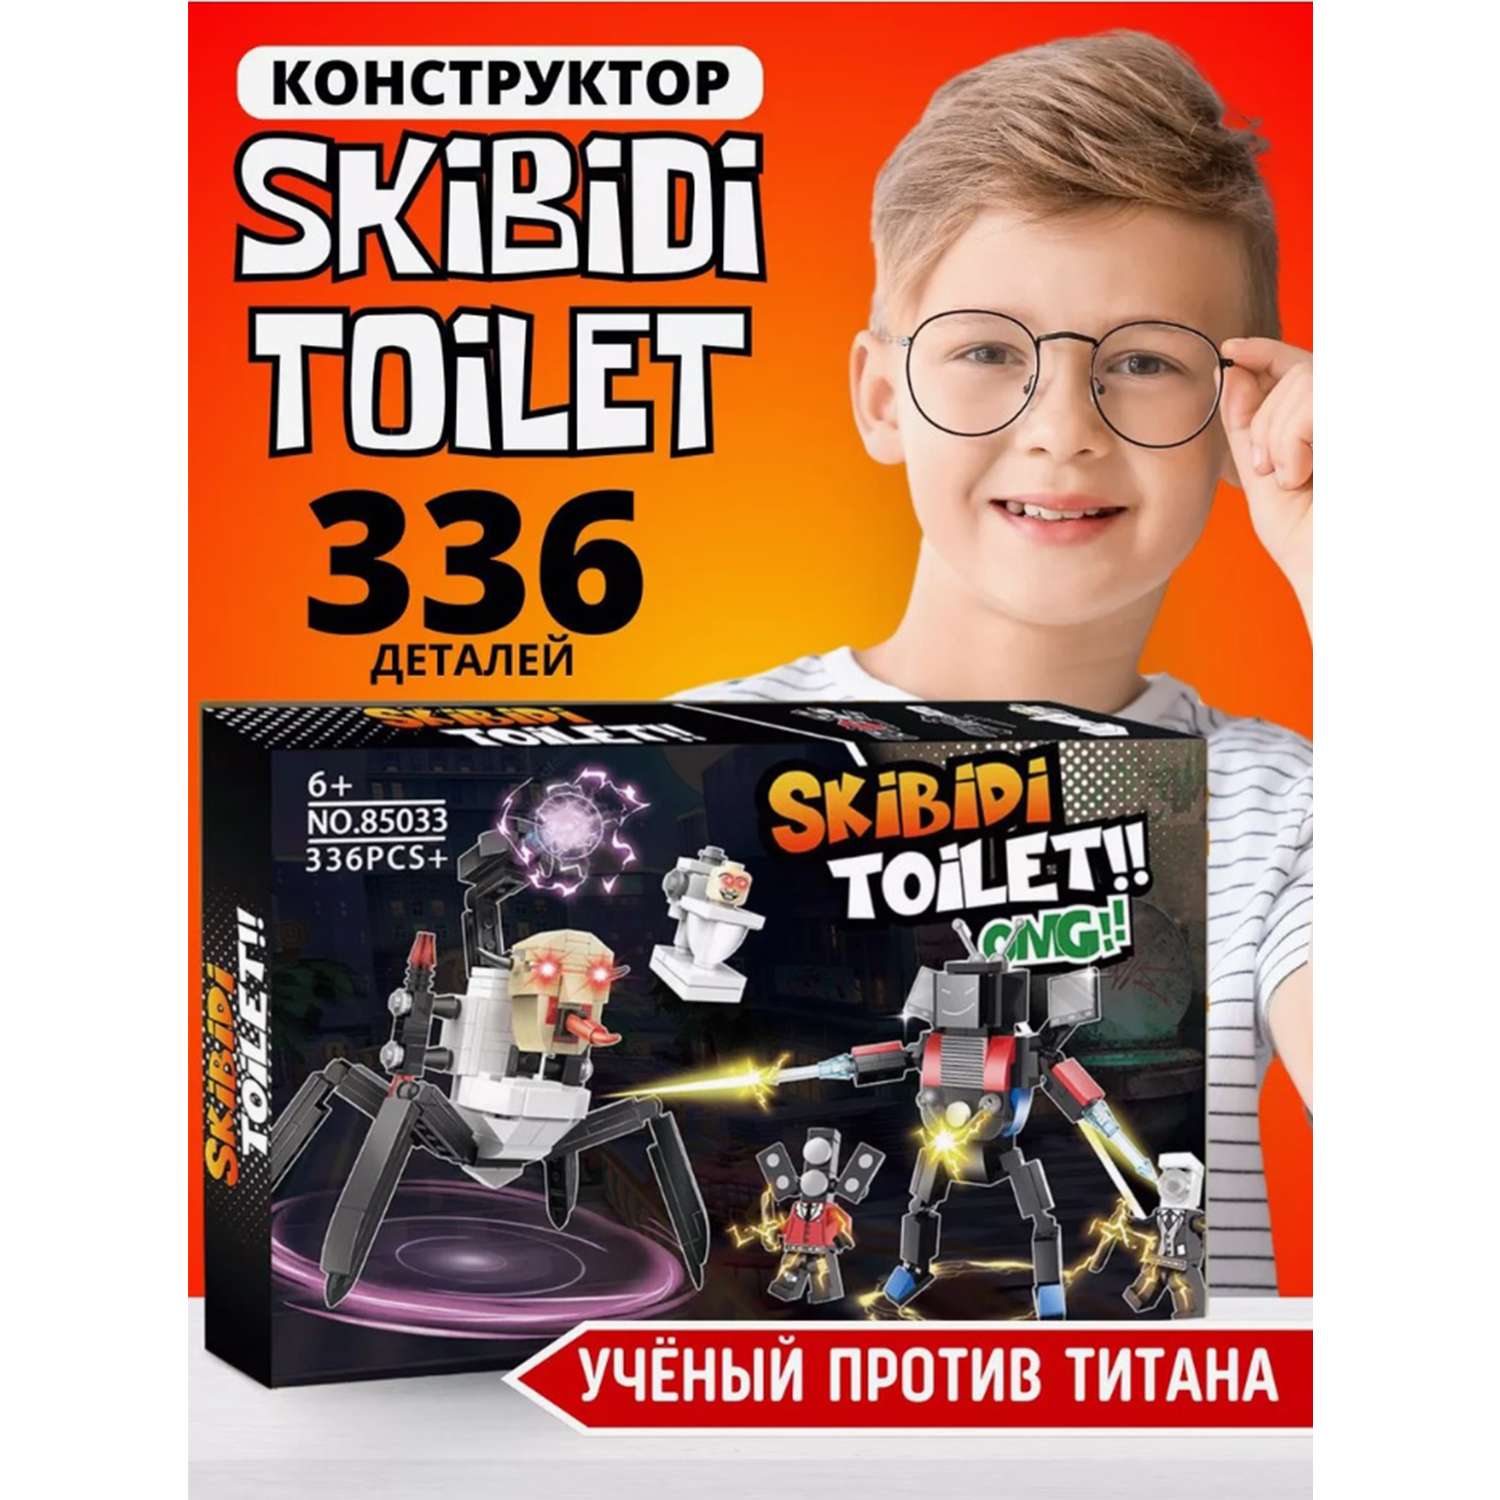 Конструктор Скибиди Туалет ТОТОША 366 деталей Skibidi Toilet lego - фото 3